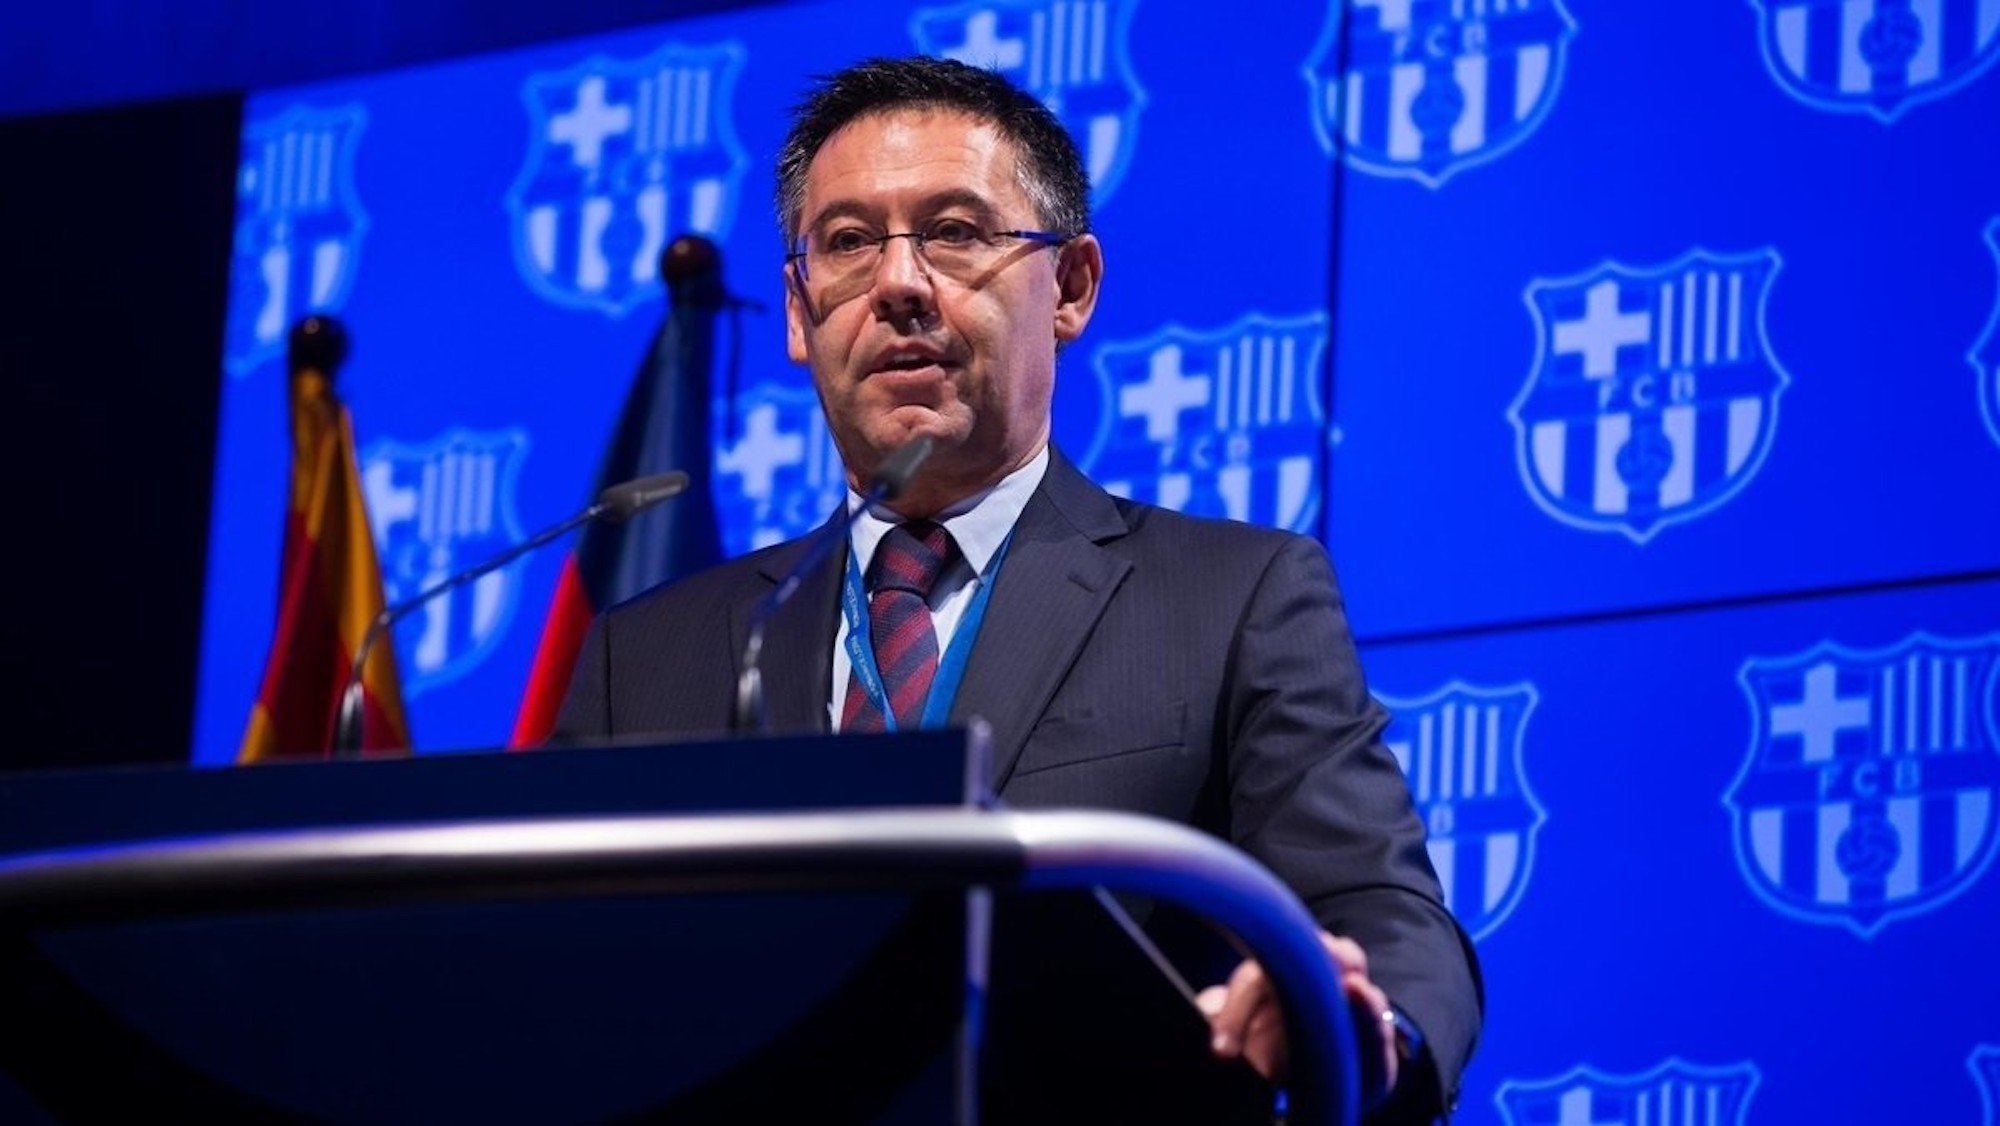 Cornered Barça president cancels I3 Ventures contract after smear allegations